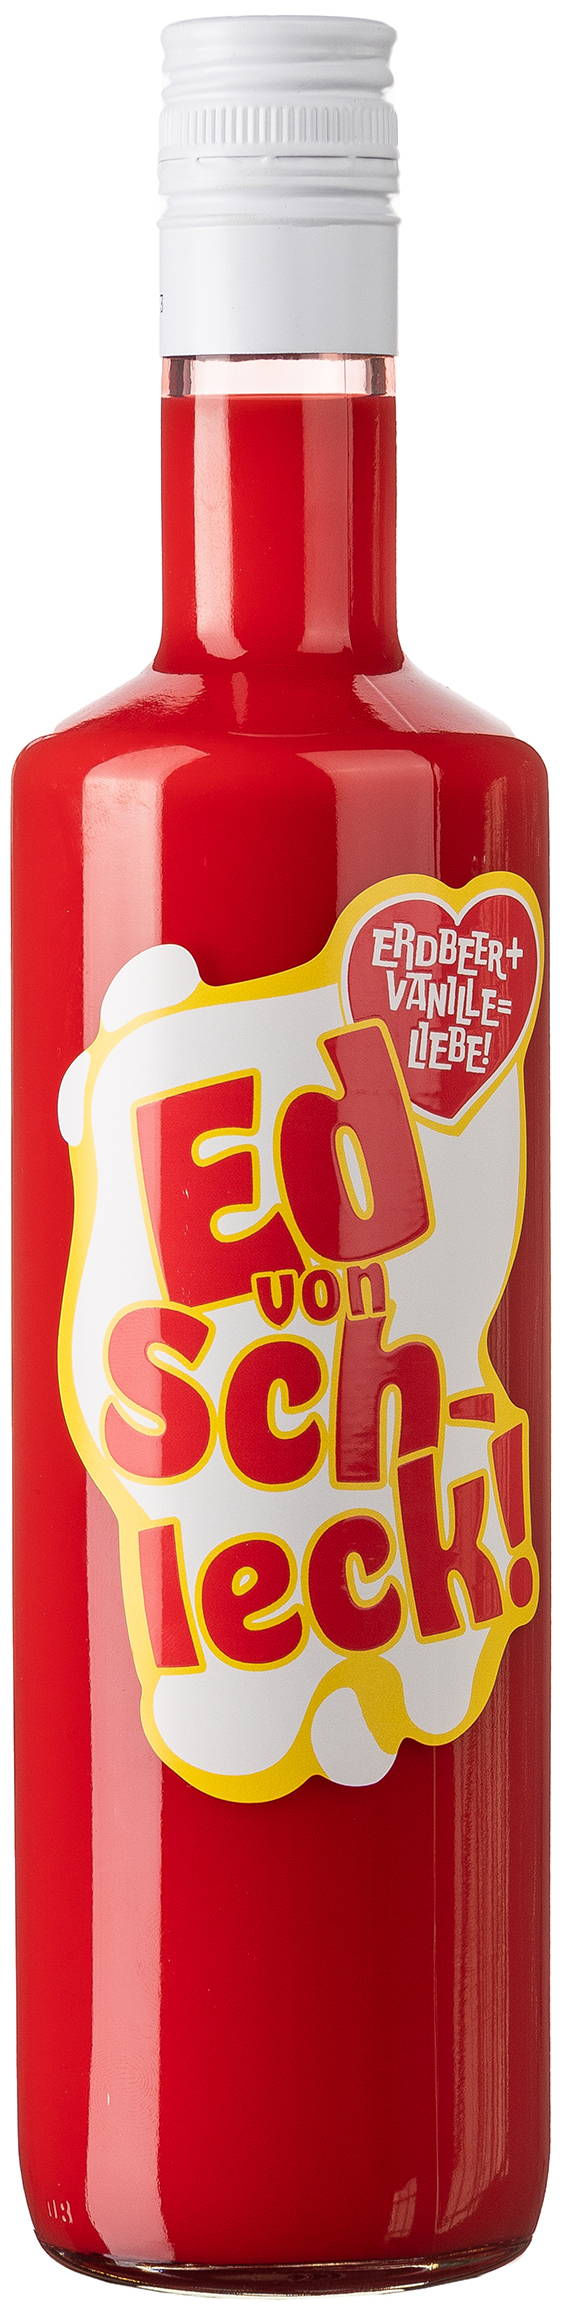 Ed von Schleck! Erdbeer-Vanille Likör 15% vol. 0,7L